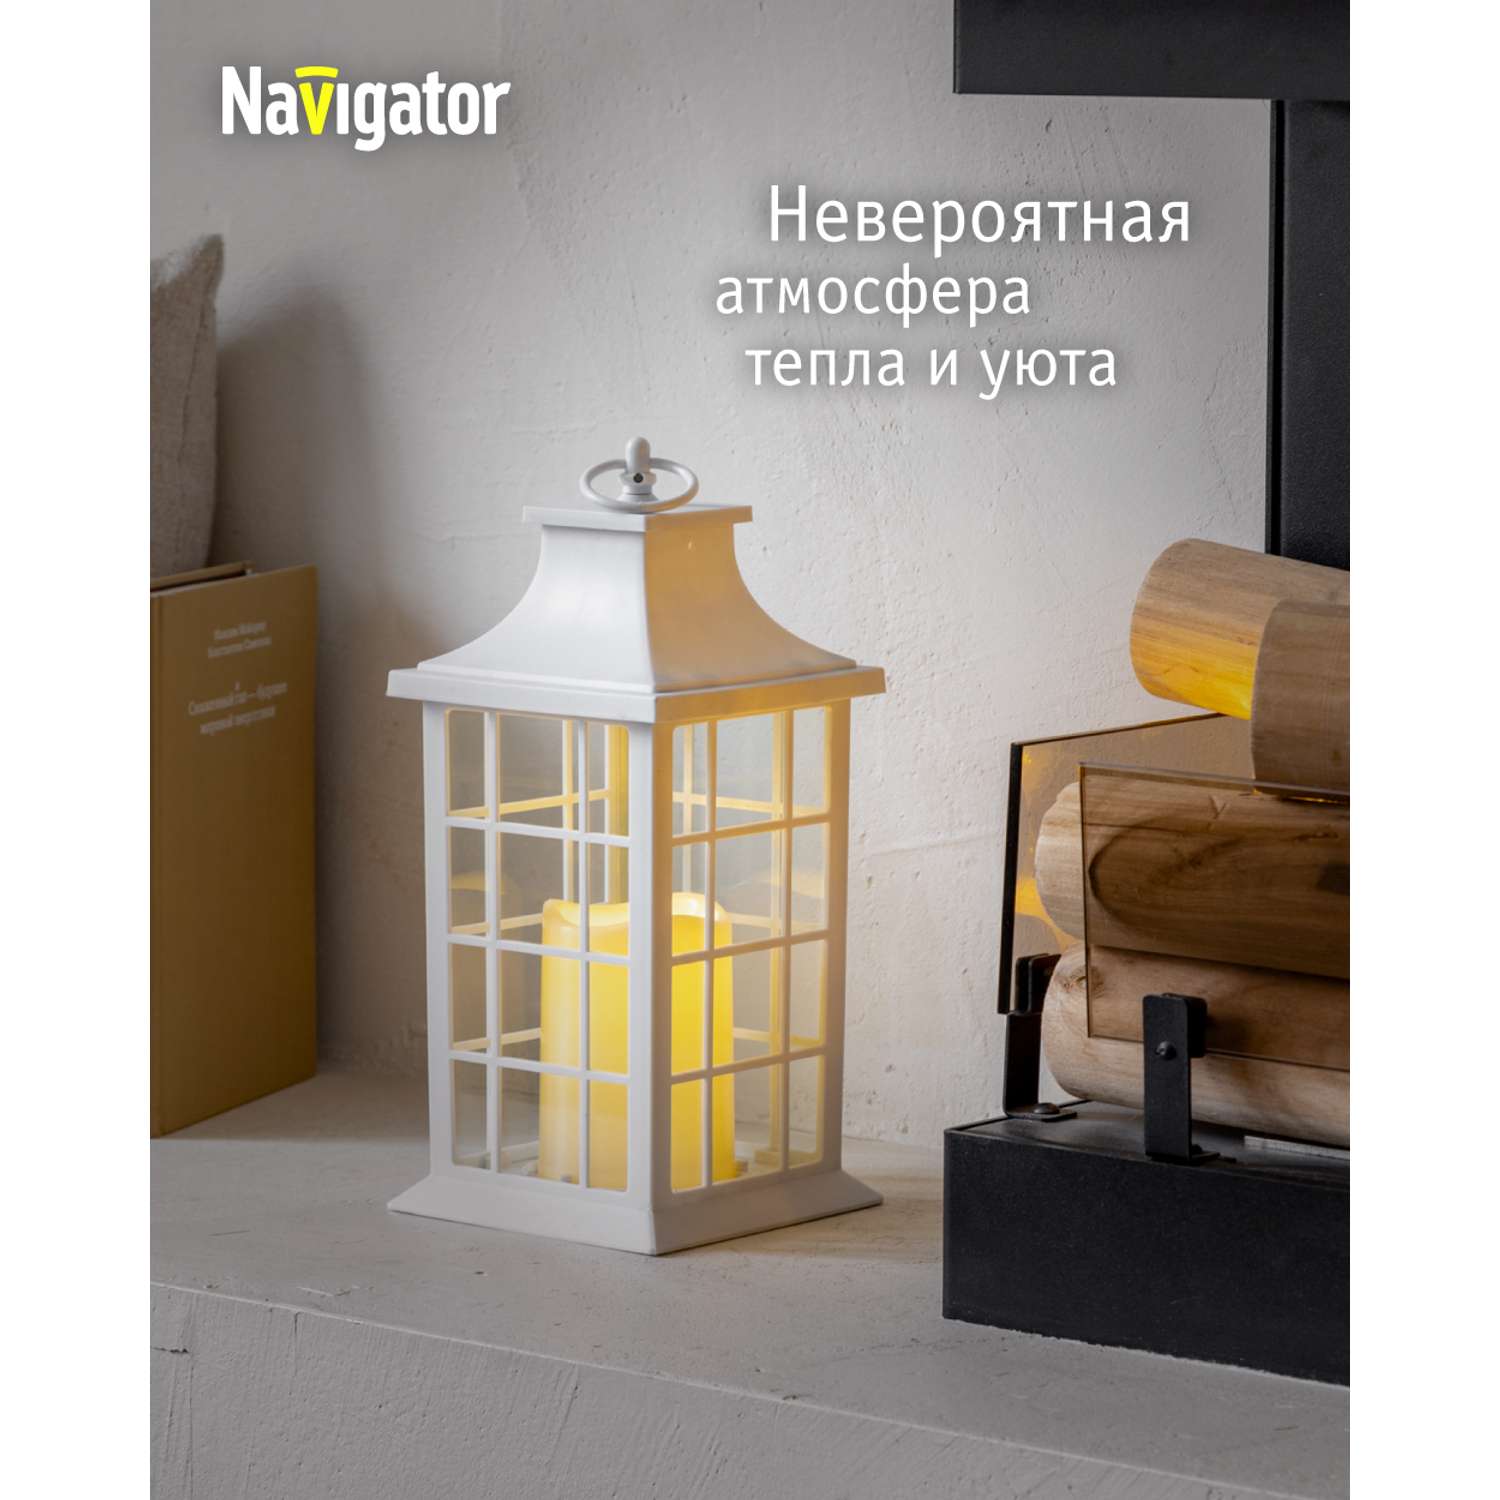 Декоративный светильник-ночник NaVigator светодиодный для детской комнаты узор белая решетка - фото 2